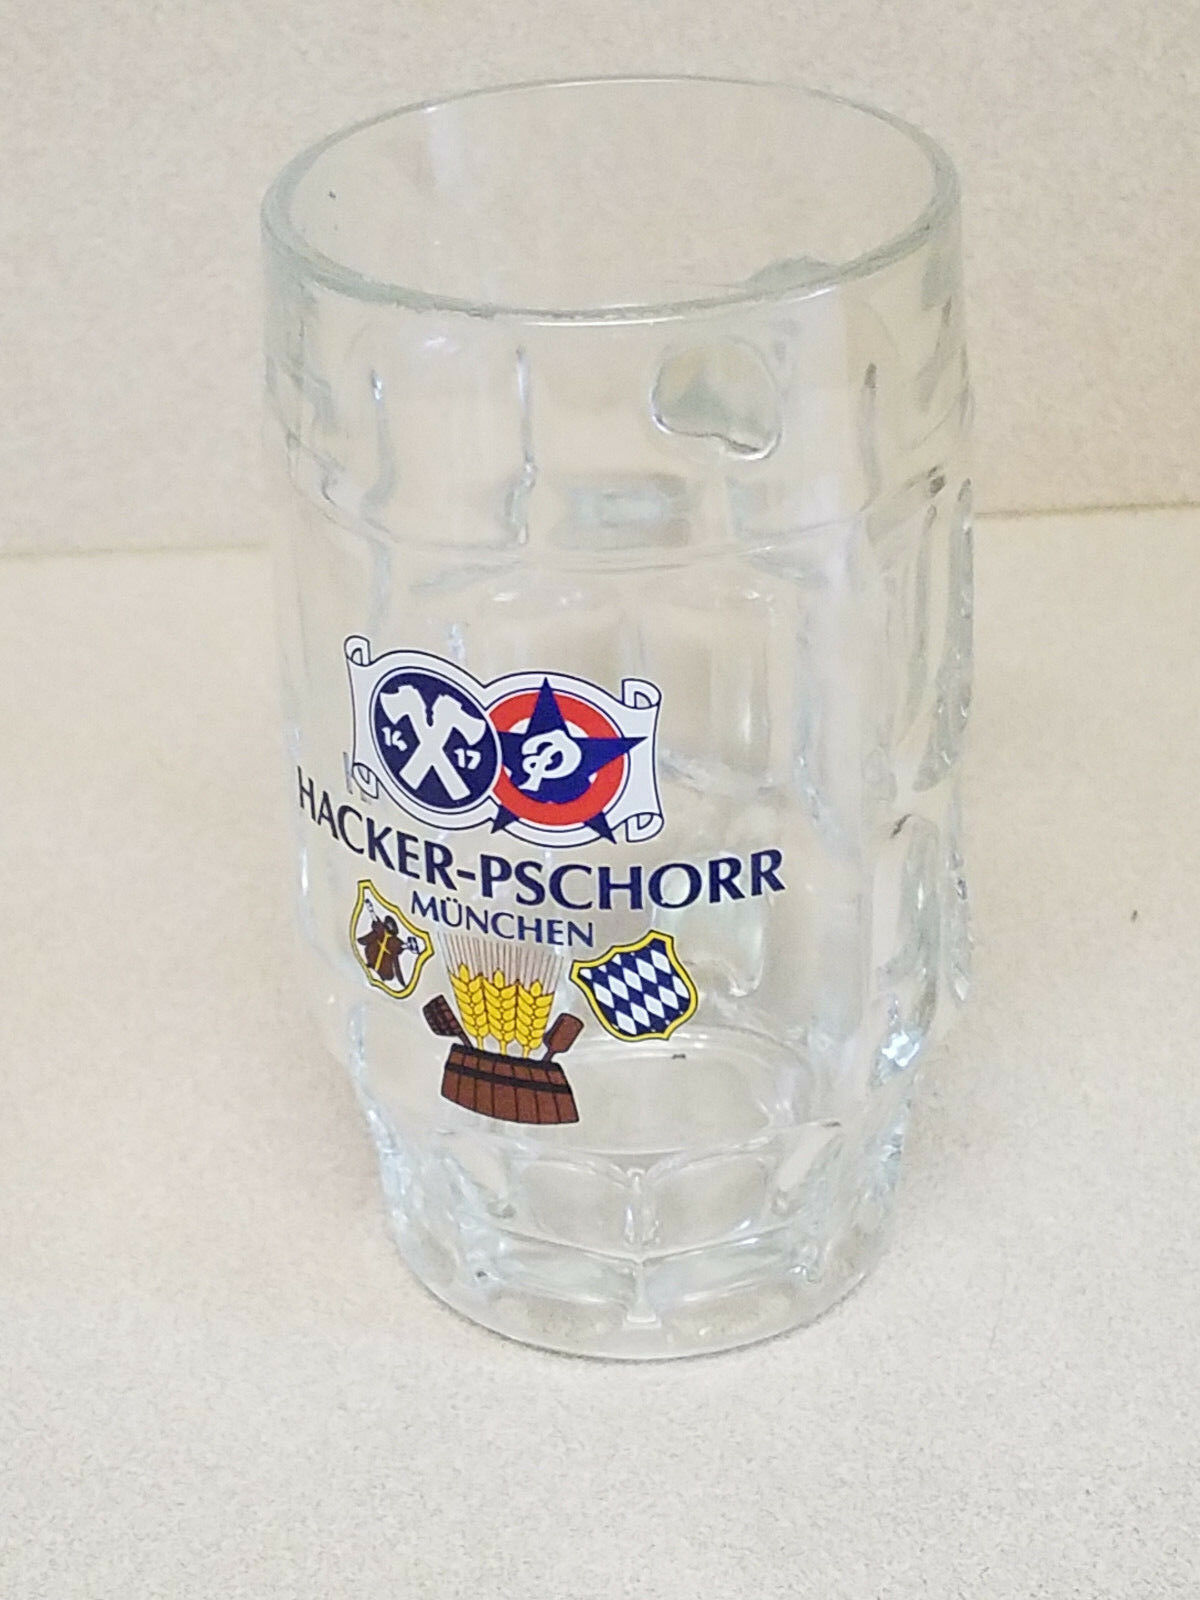 HACKER-PSCHORR MUNCHEN GERMAN BEER HEAVY GLASS BEER MUG STEIN - $19.75